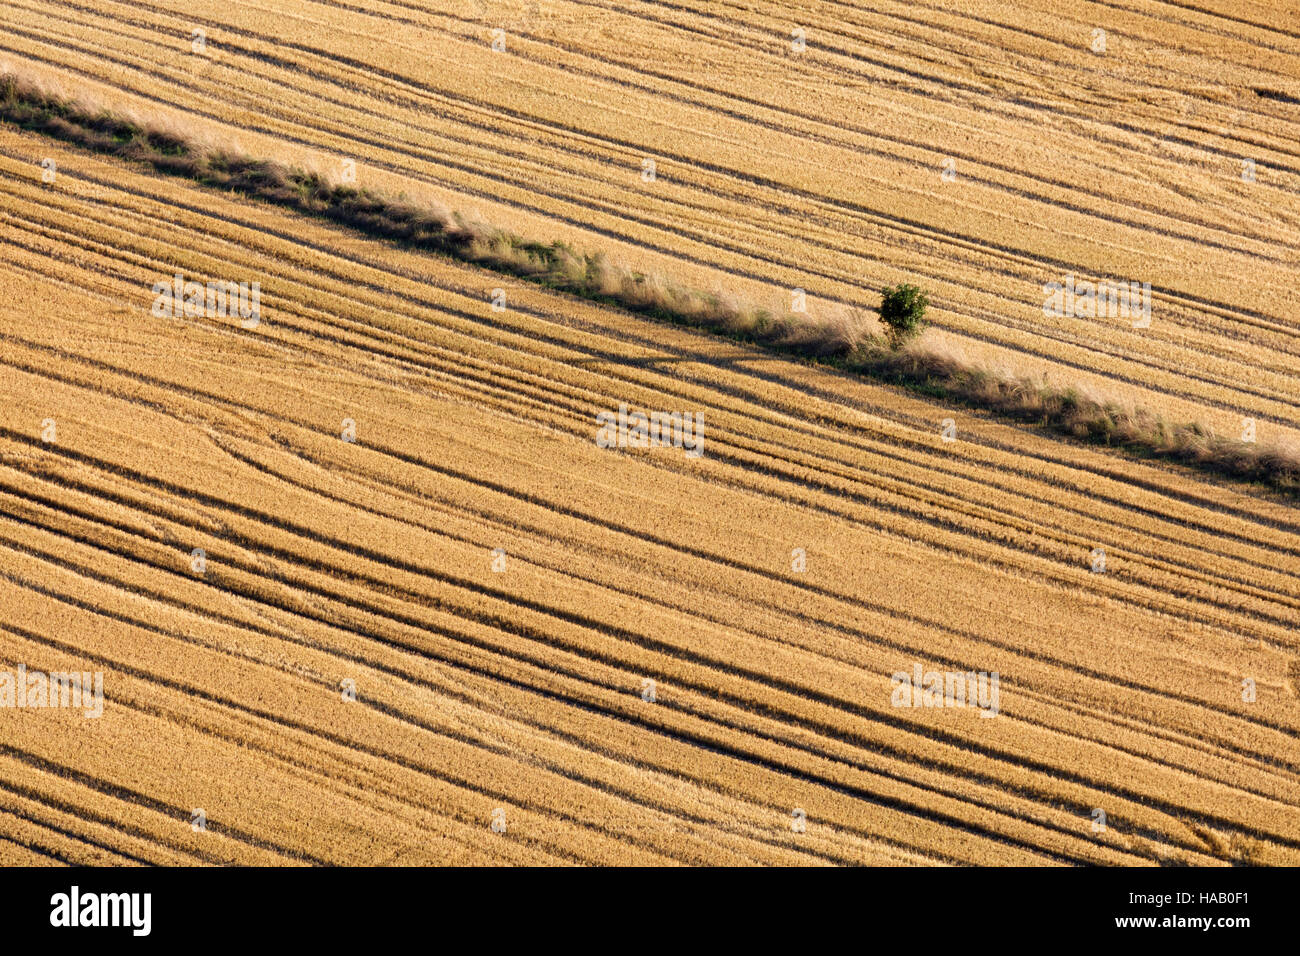 Résumé des image d'un arbre isolé dans une haie entre deux champs qui ressemblent à corduroy après la récolte Banque D'Images